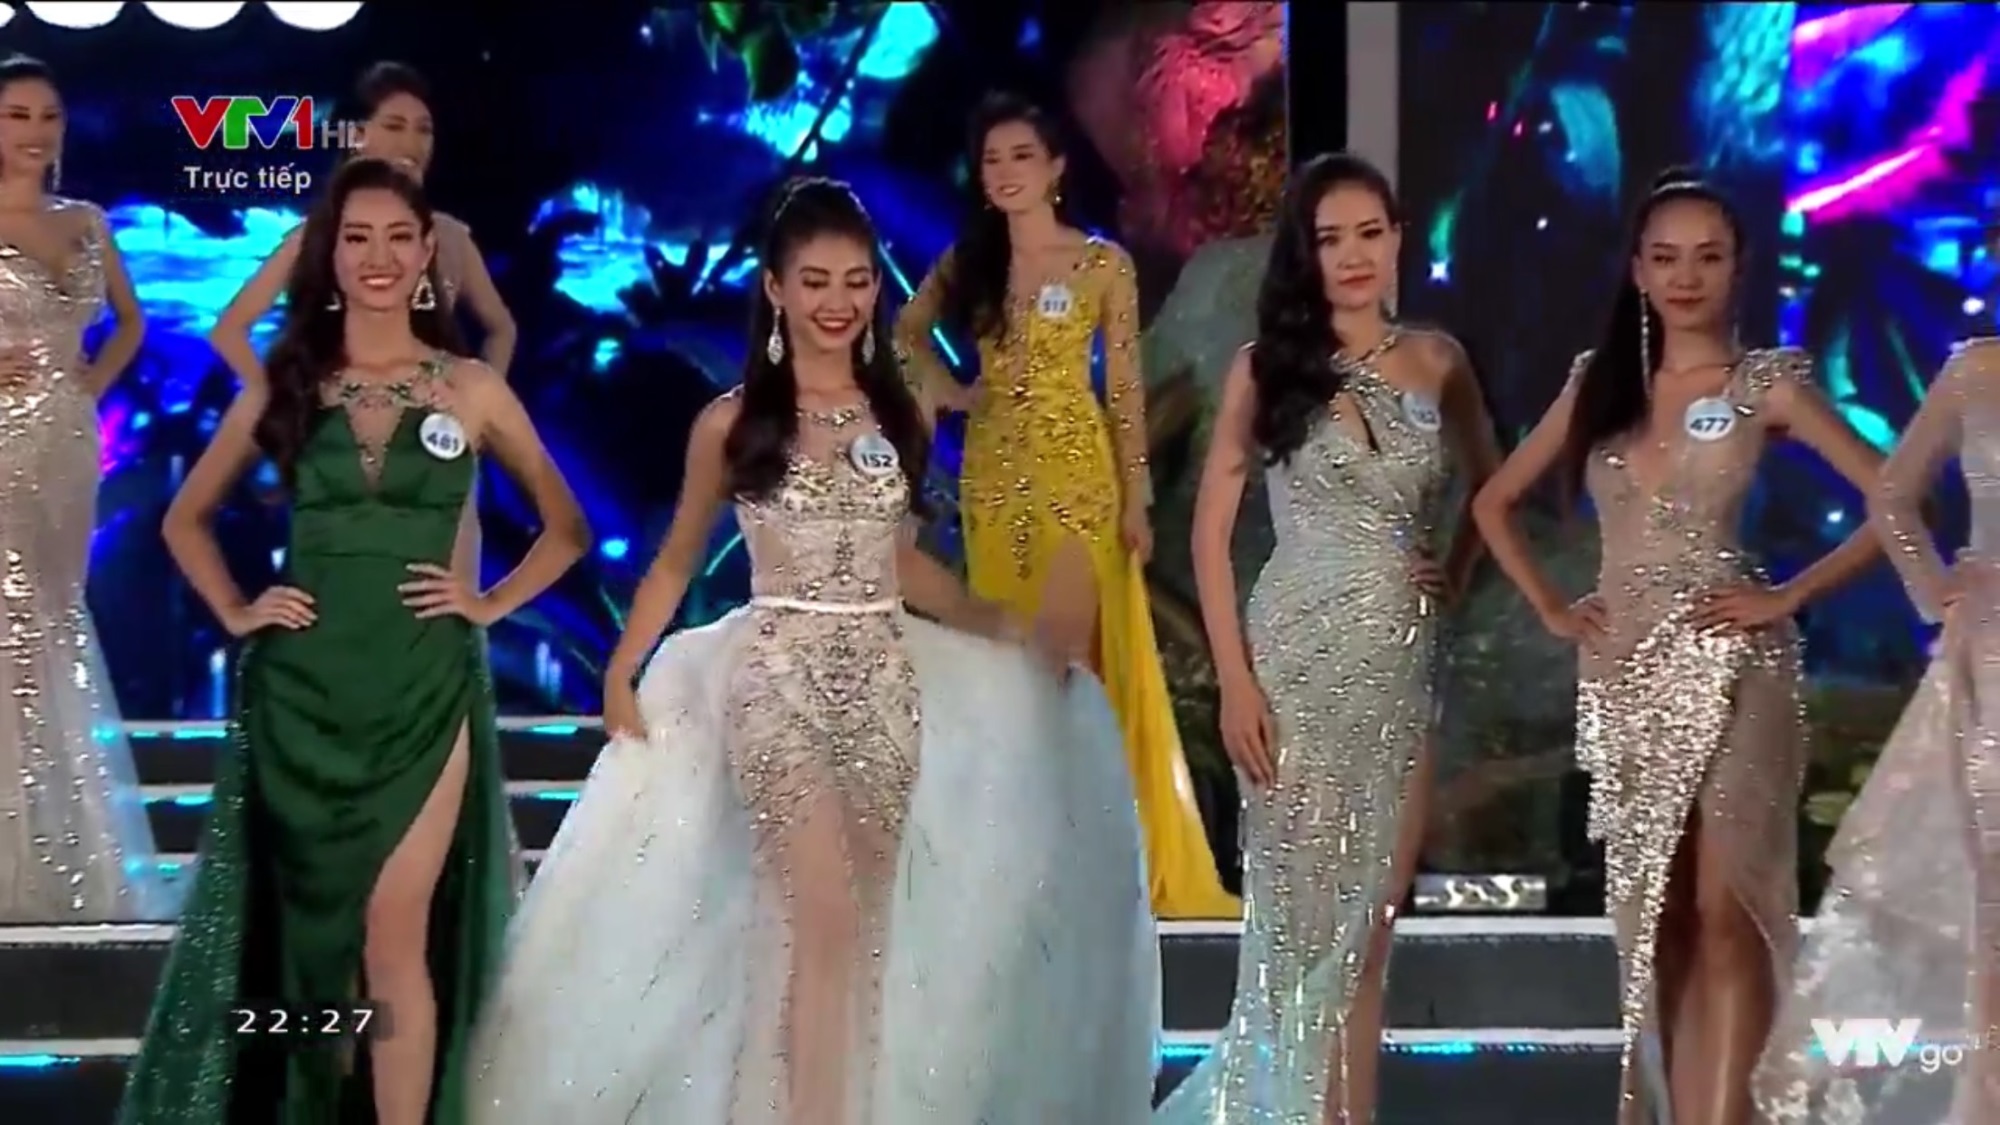 Lương Thùy Linh đăng quang Hoa hậu Thế giới Việt Nam - Miss World Việt Nam 2019 - Ảnh 8